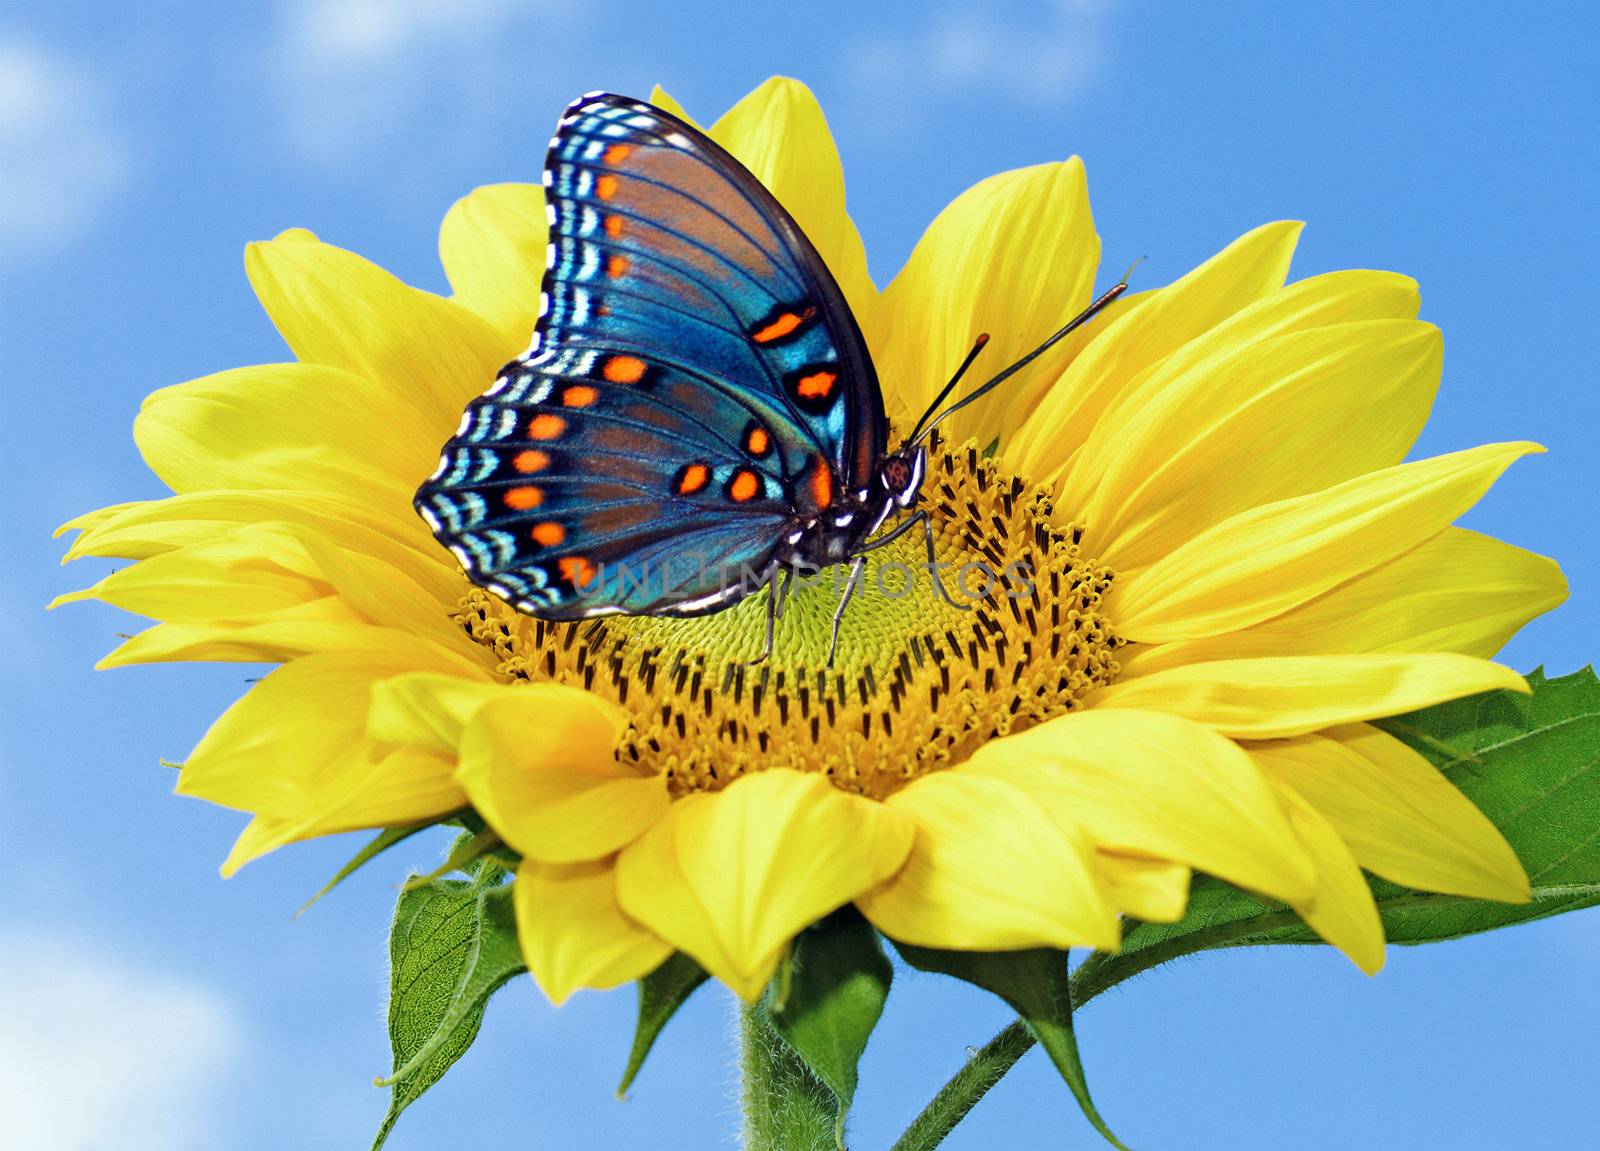 Sunflower with blue butterfly  by majeczka